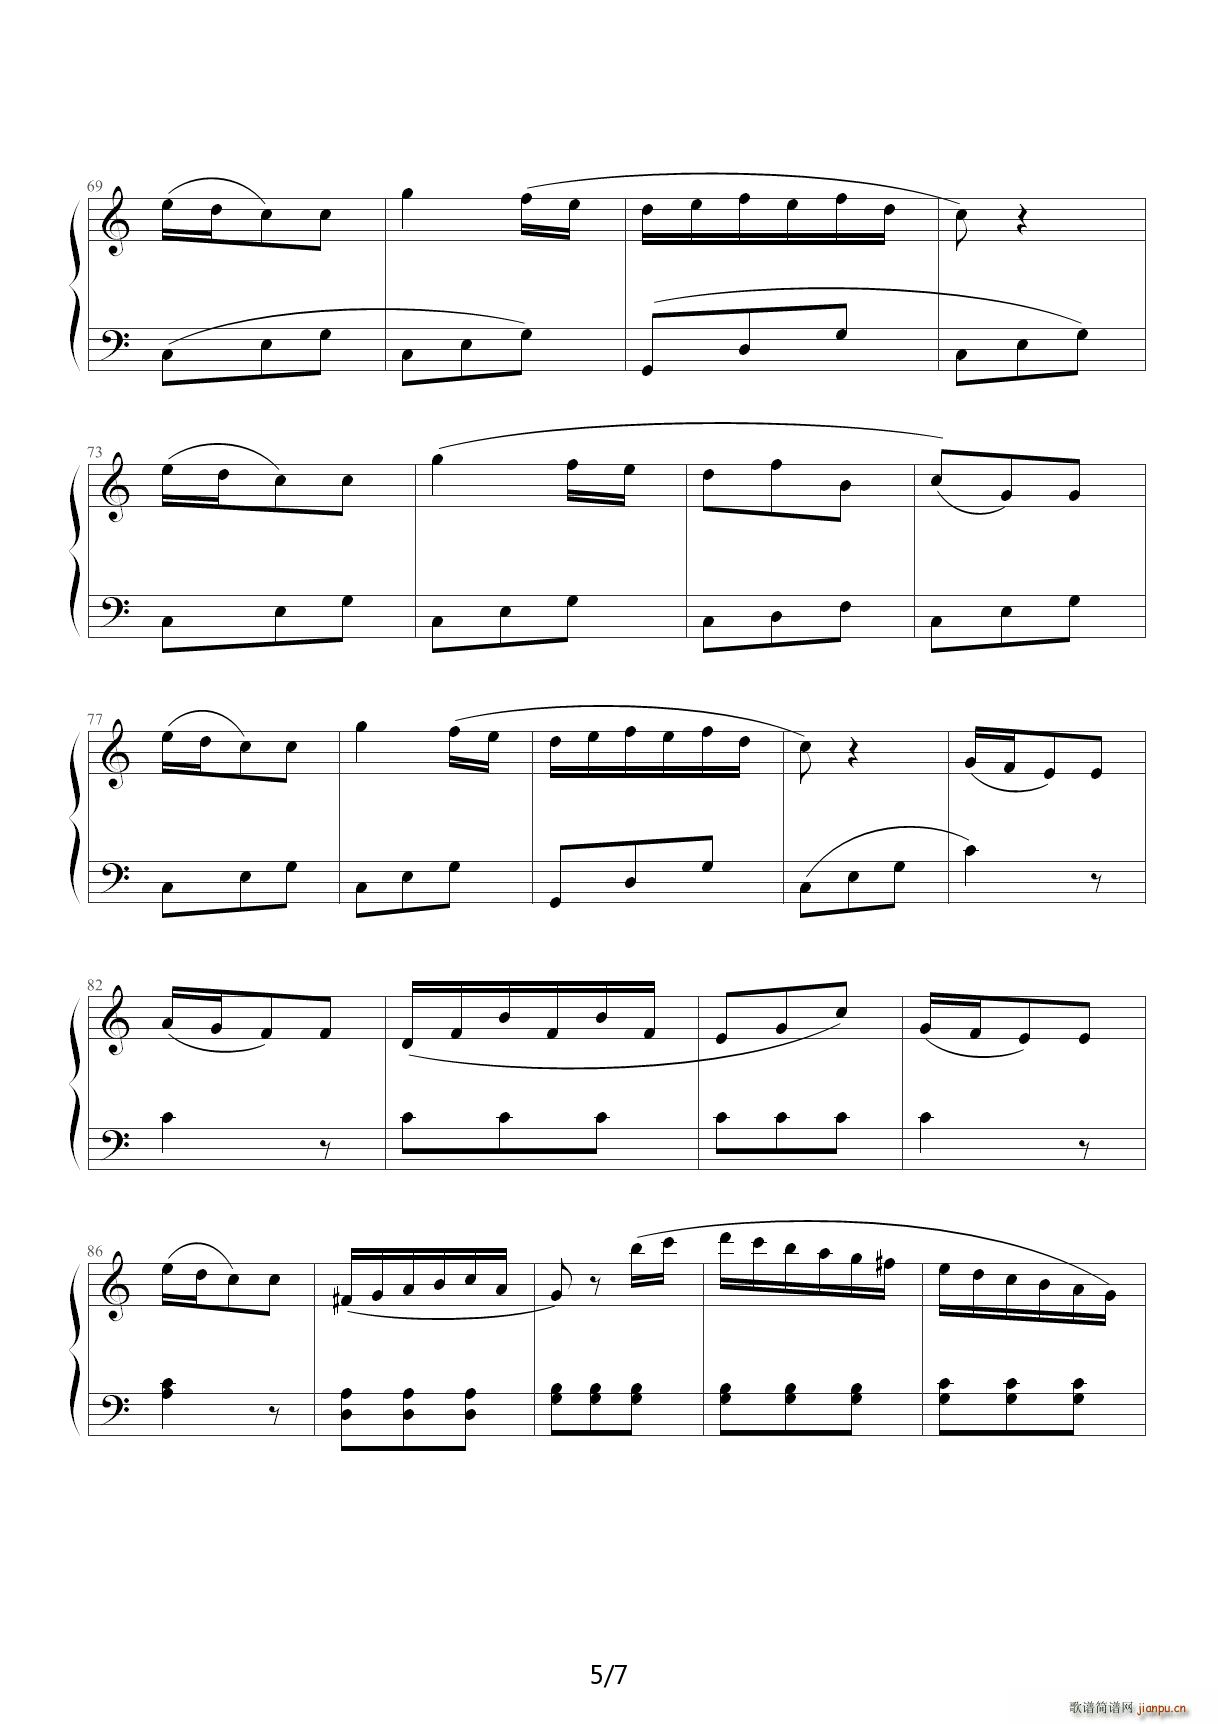 克列门蒂小奏鸣曲op 36 no 1 三个乐章 c调(钢琴谱)5图片